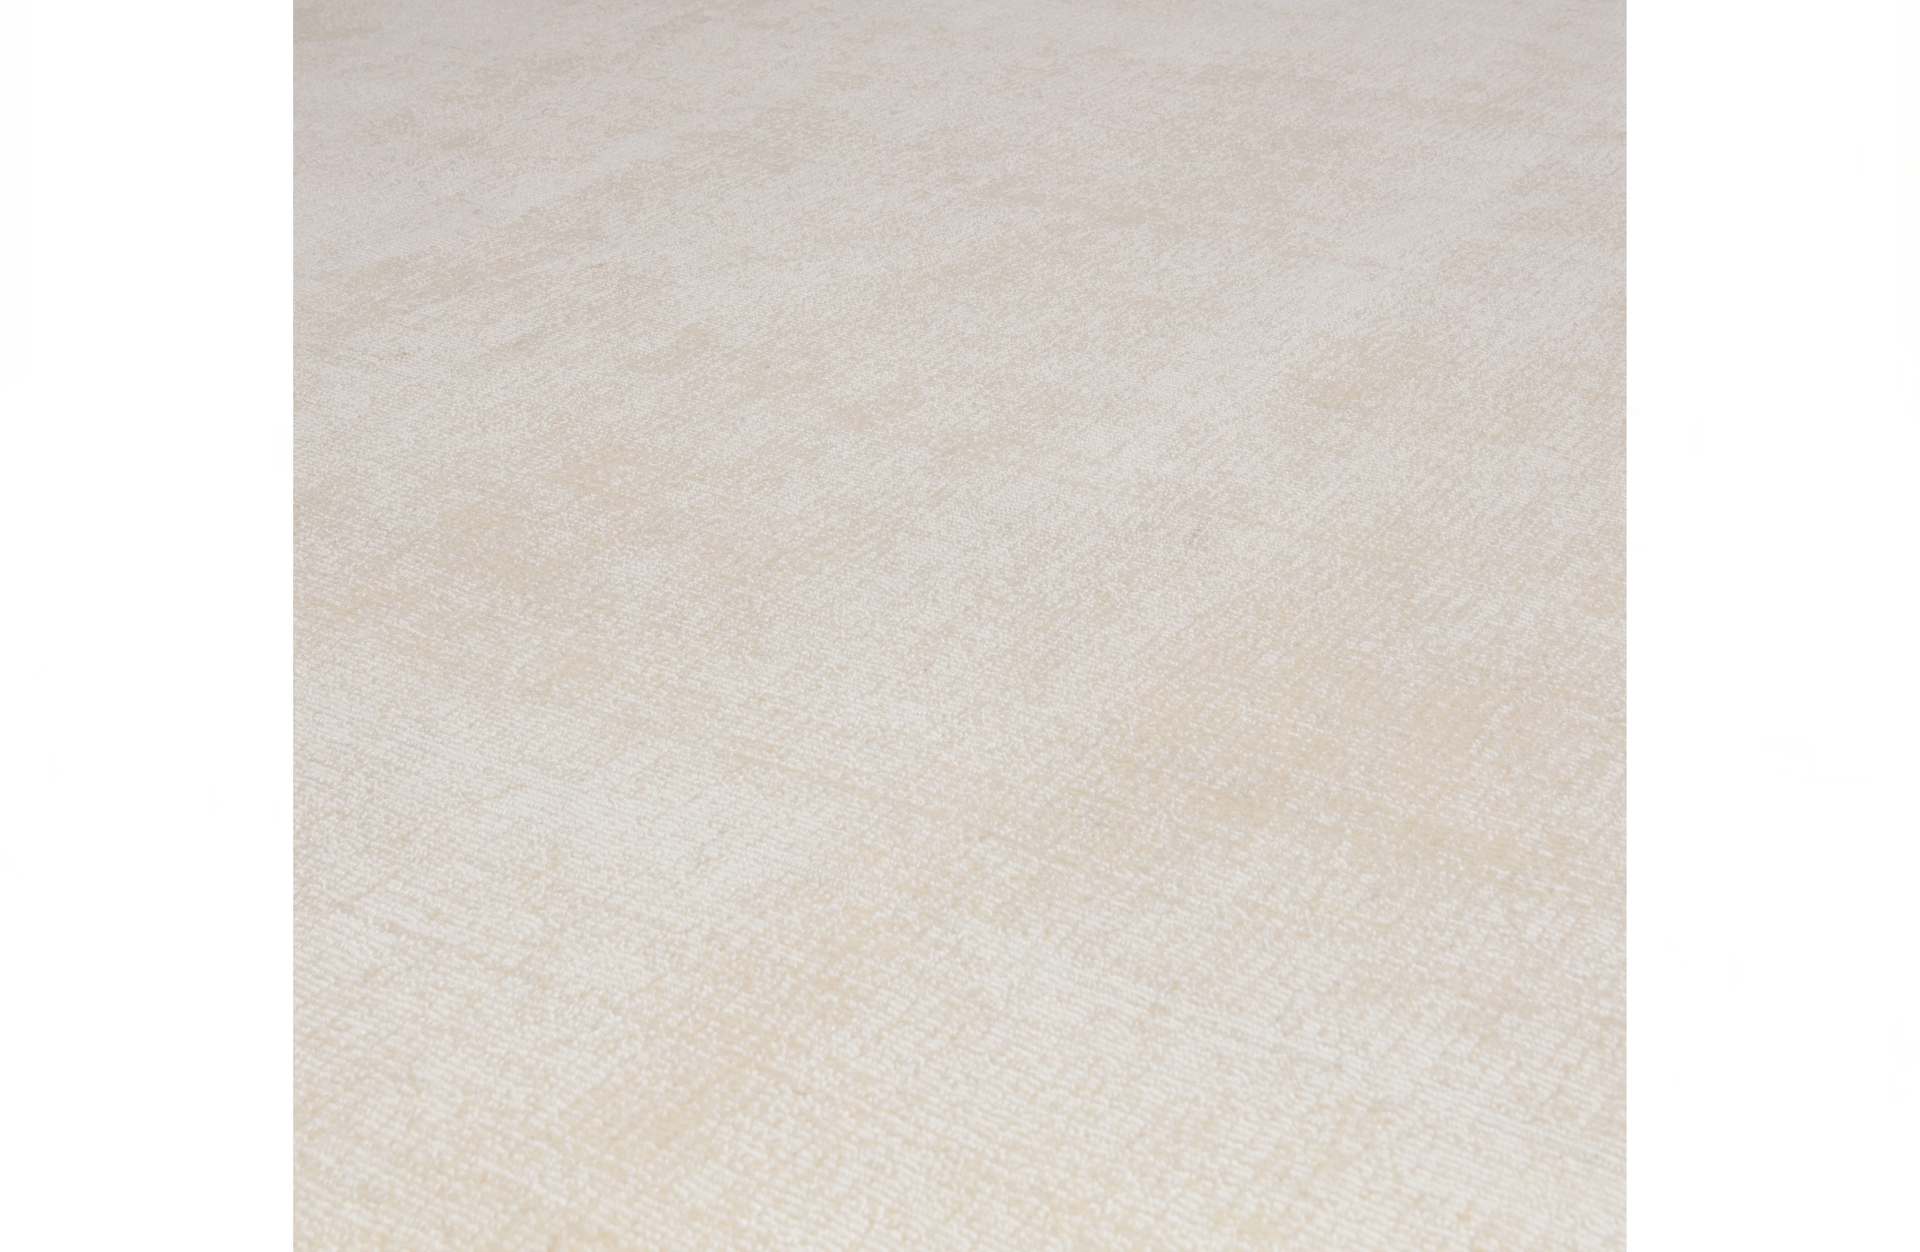 Der Teppich Ravel überzeugt mit seinem modernen Design. Gefertigt wurde er aus Kunststofffasern, welche einen grauen Farbton besitzt. Der Teppich besitzt einen Durchmesser von 200 cm.